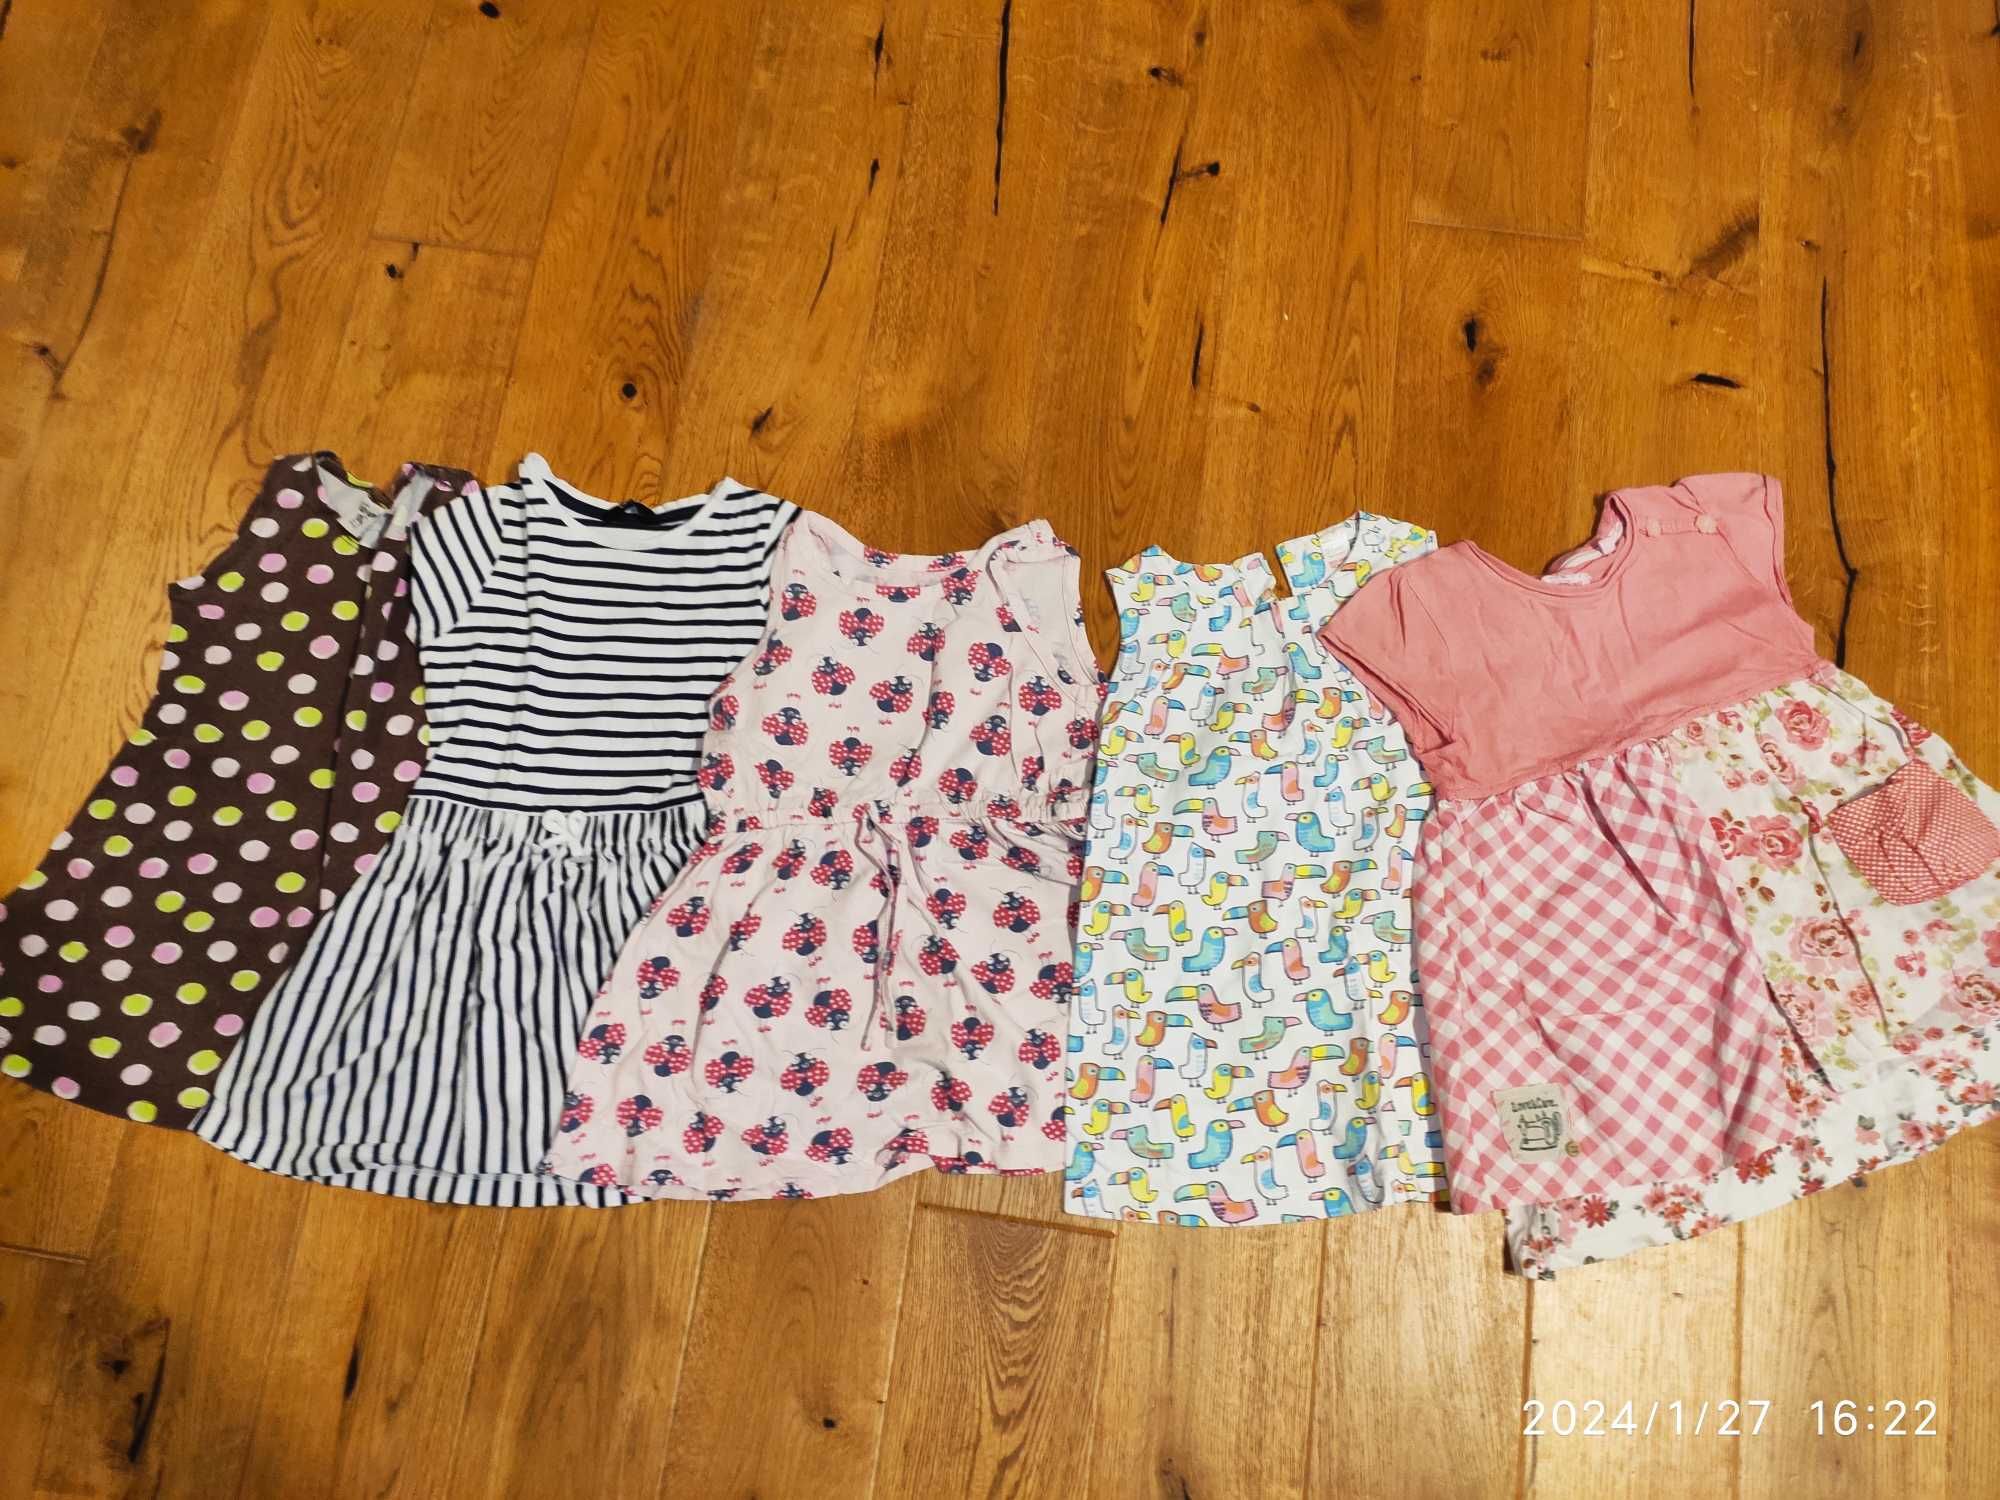 Paka ubrań dla dziewczynki/ Ubranka dla dziewczynki 98-110